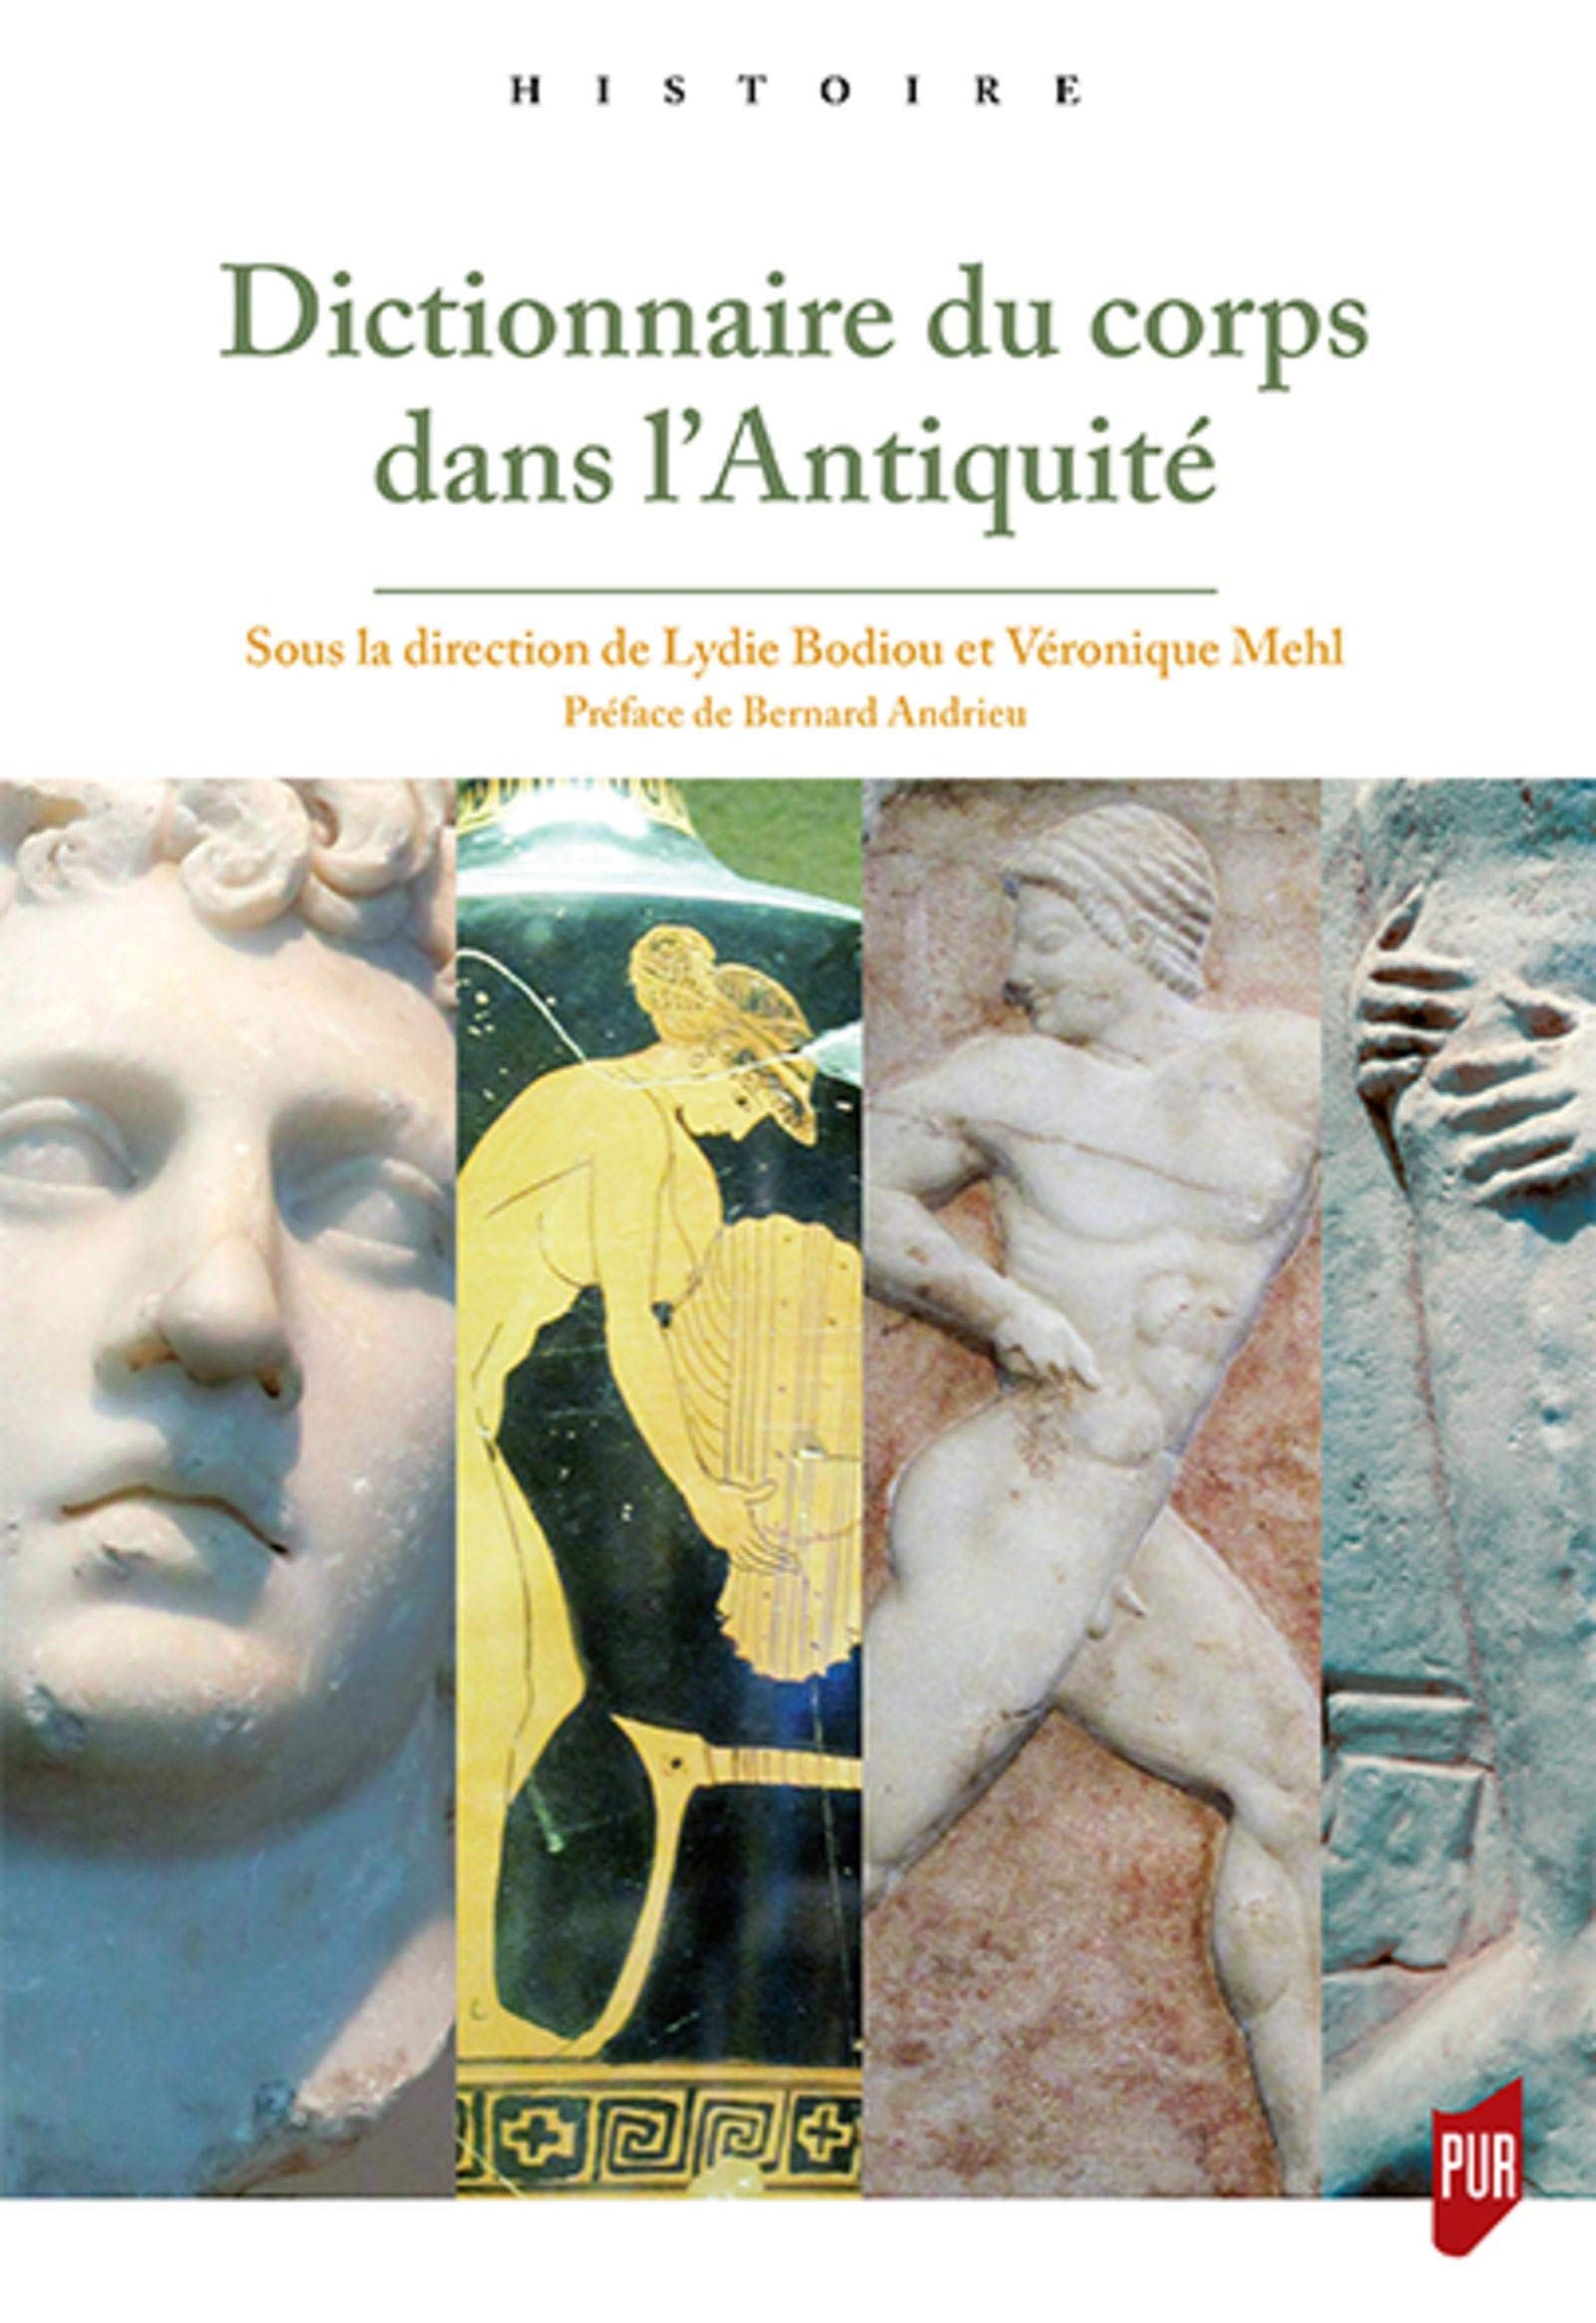 Dictionnaire du corps dans l'Antiquité, 2019, 682 p.